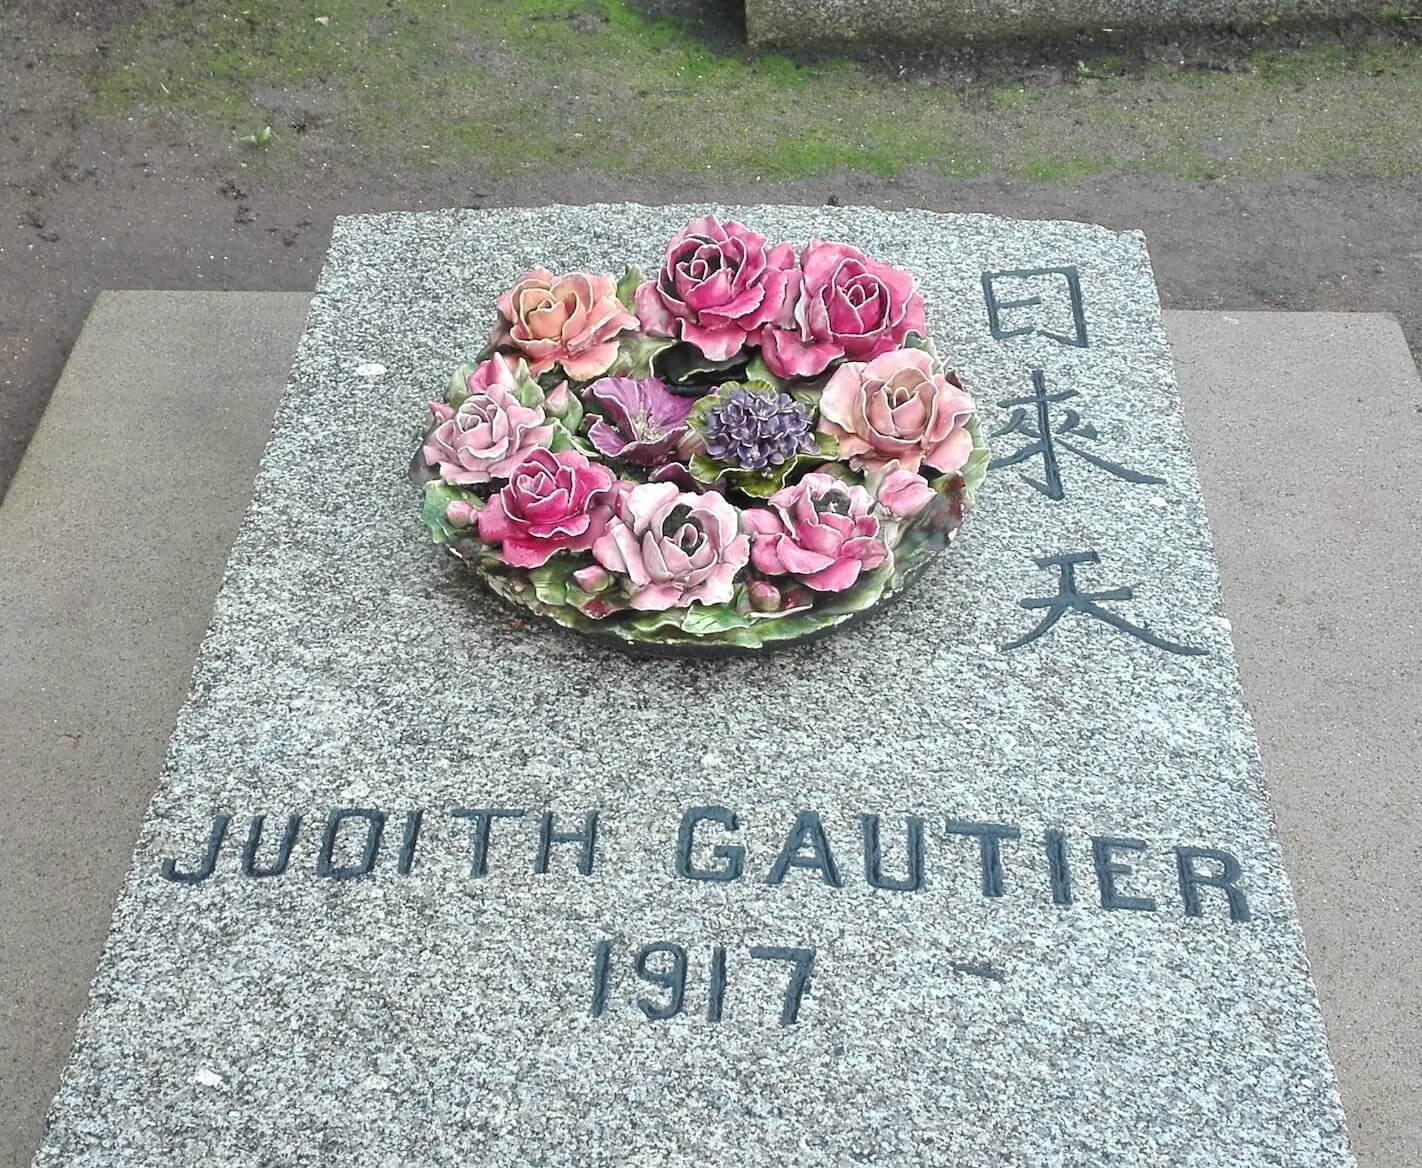 Tombe de Judith Gautier